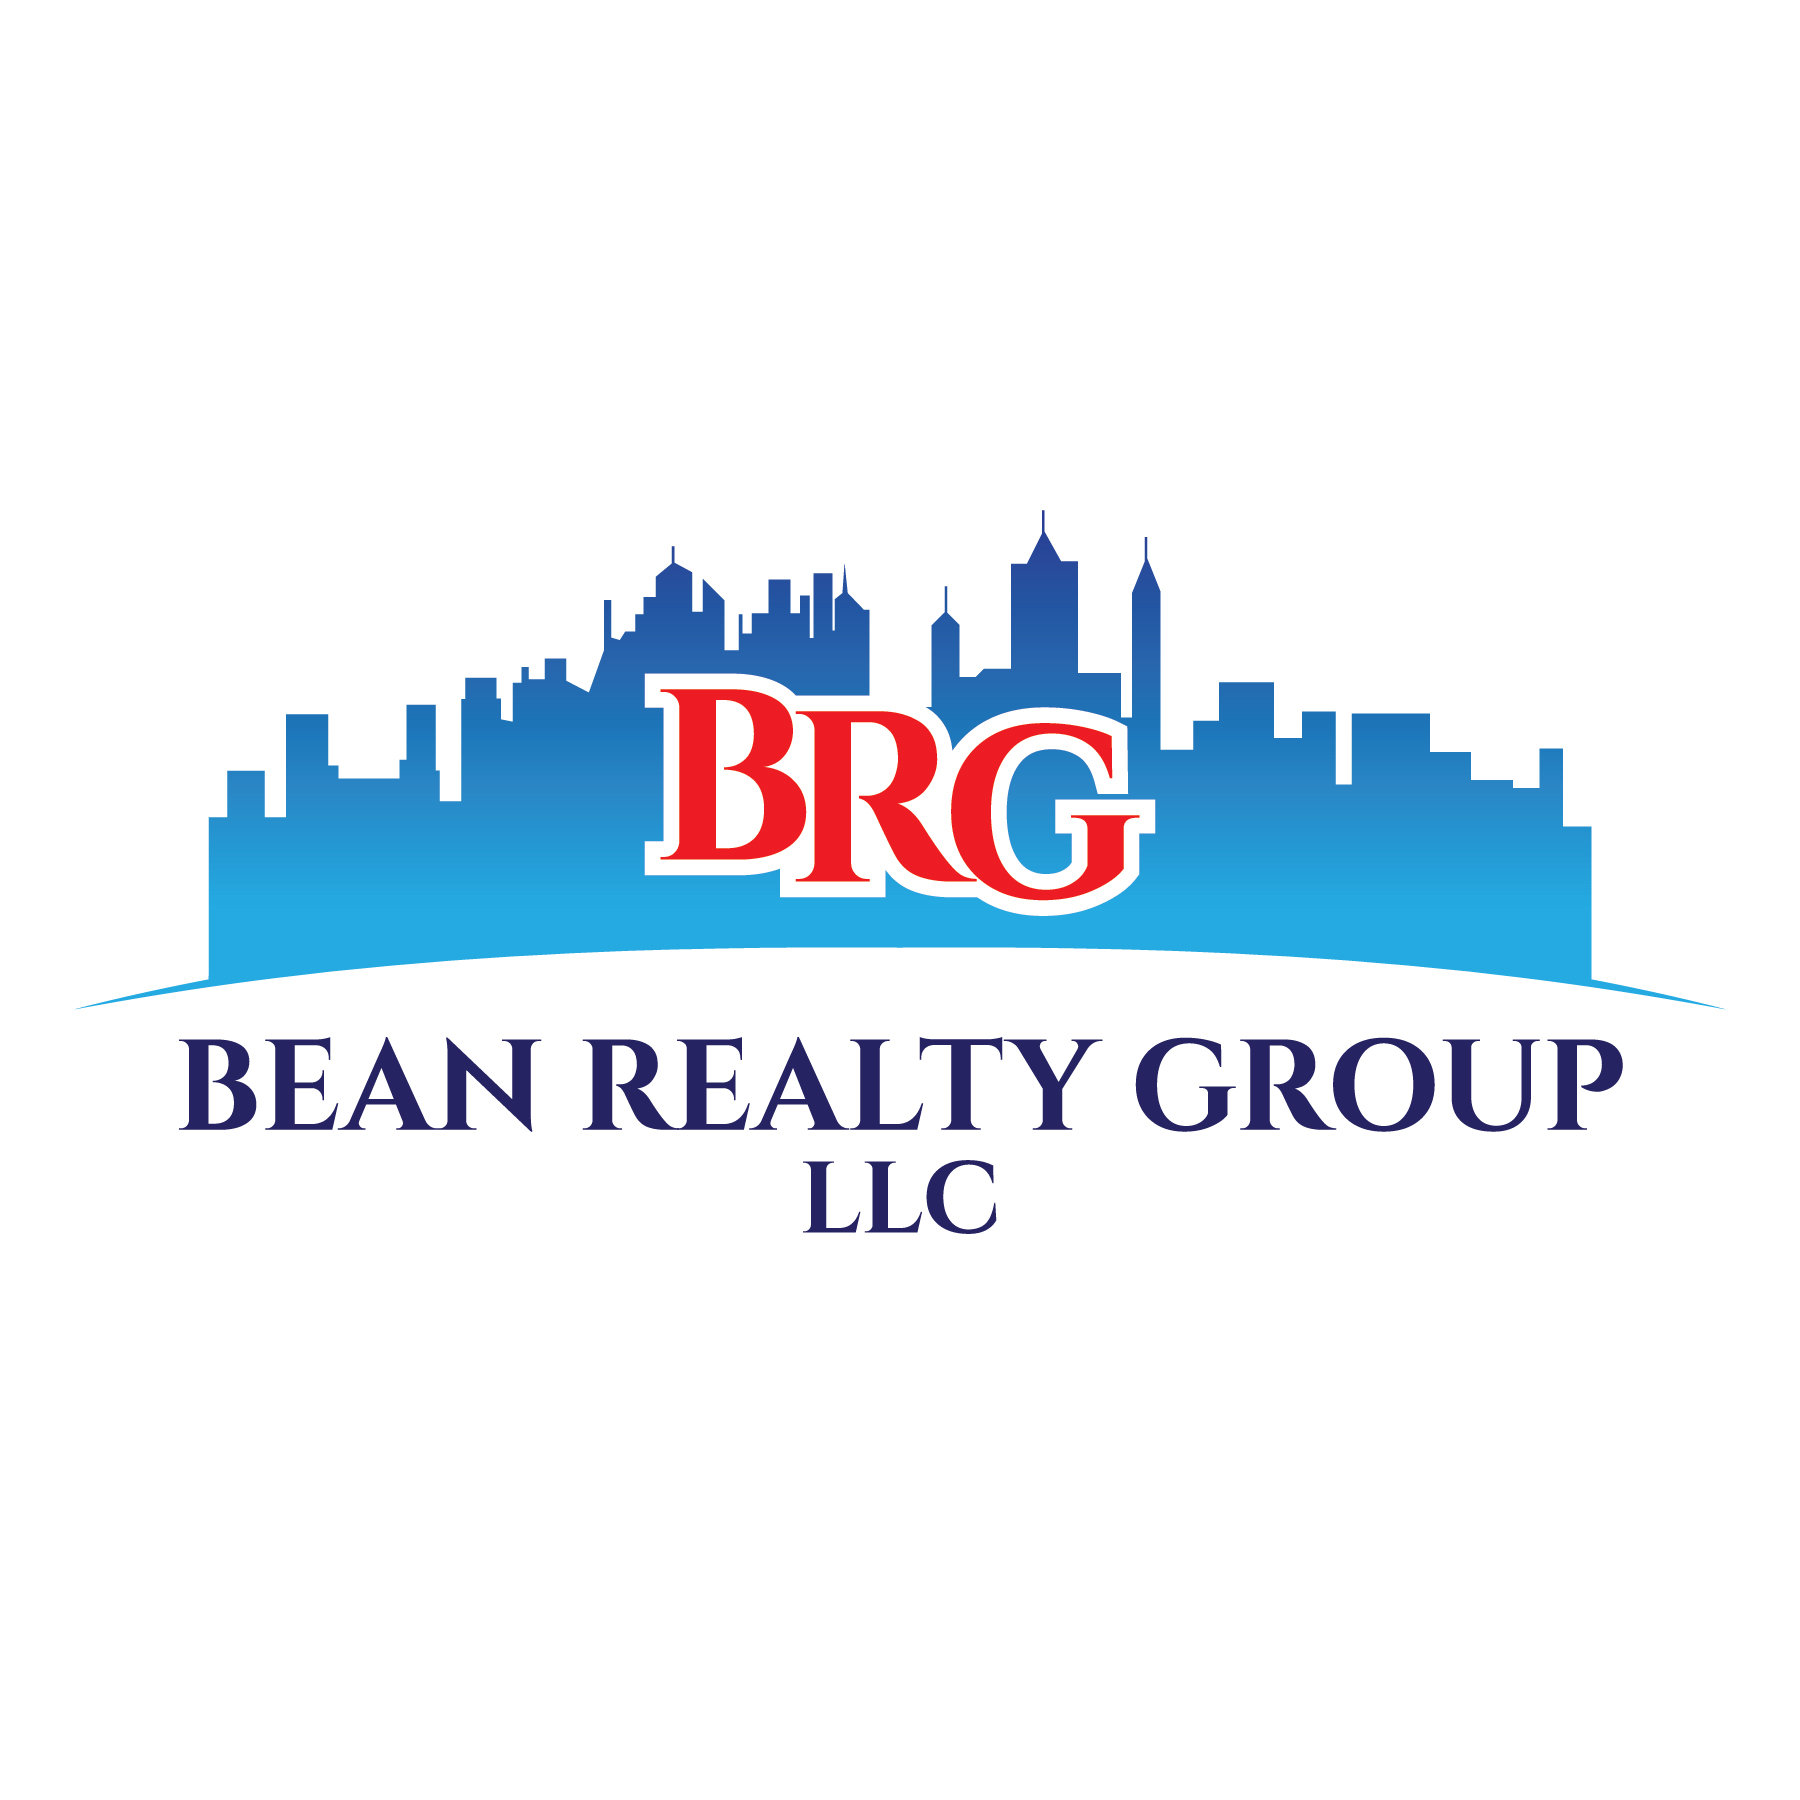 Bean Realty Group, LLC